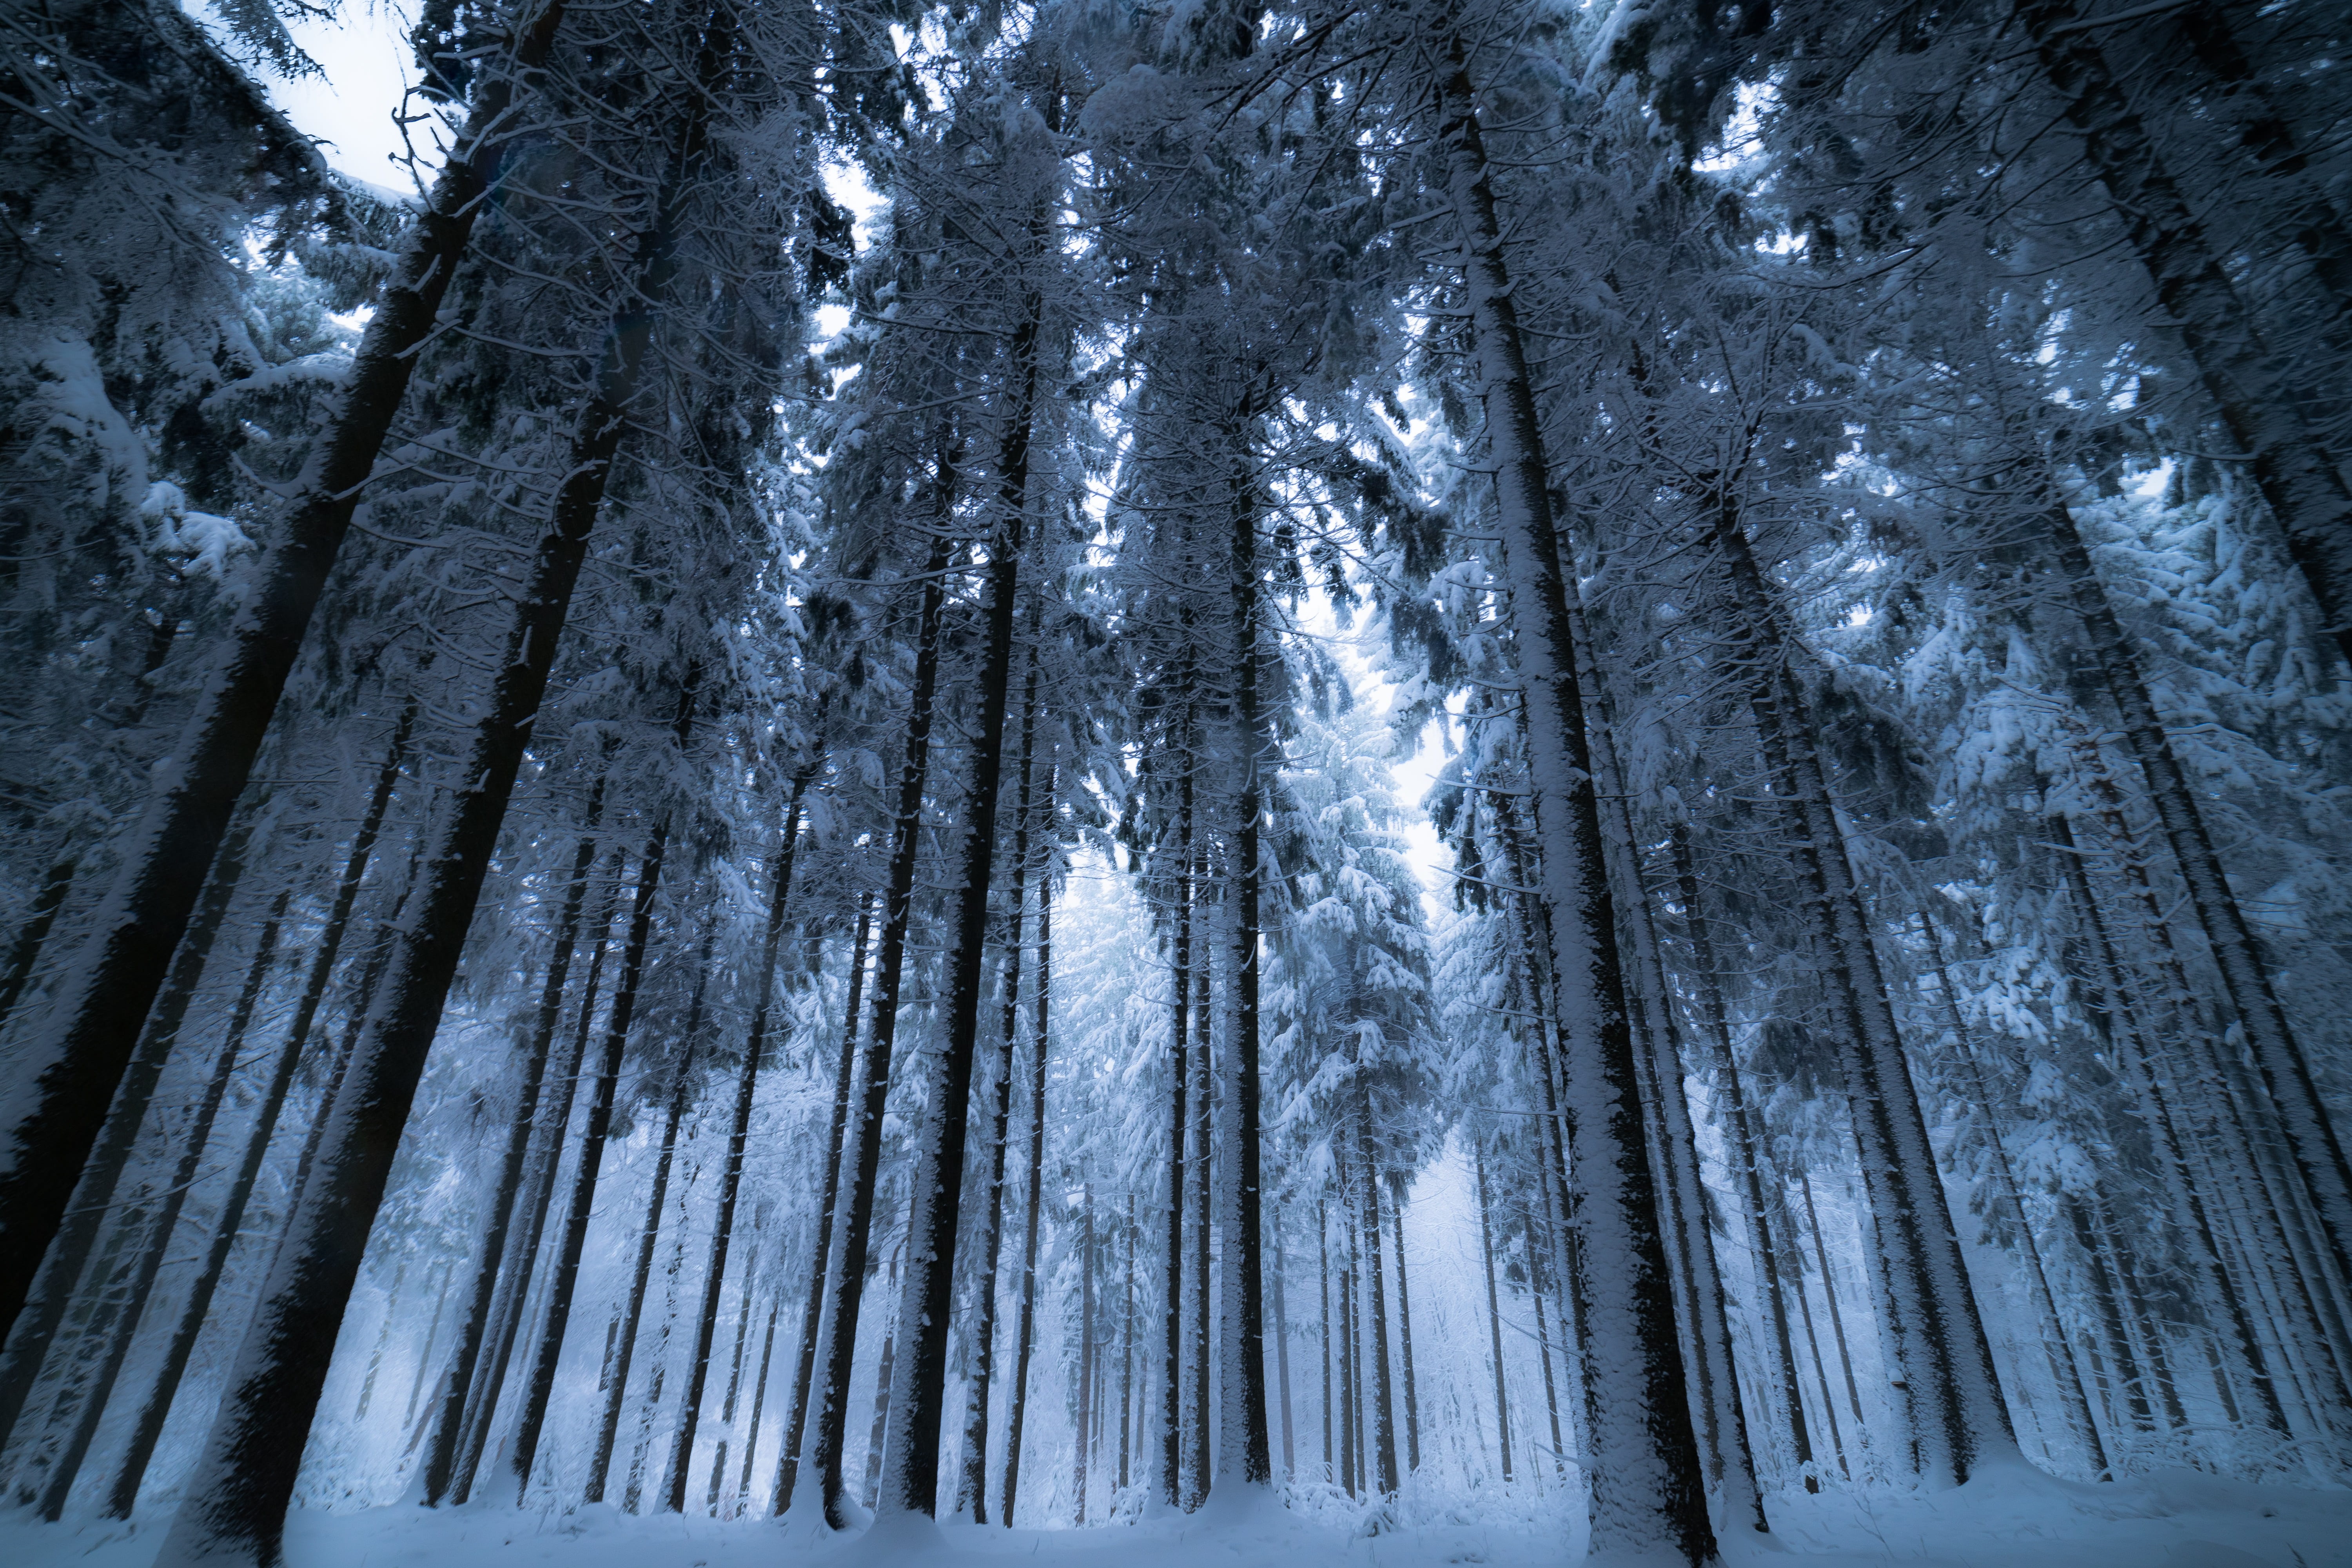 免费照片壁纸 冬天的针叶林与高大的树木